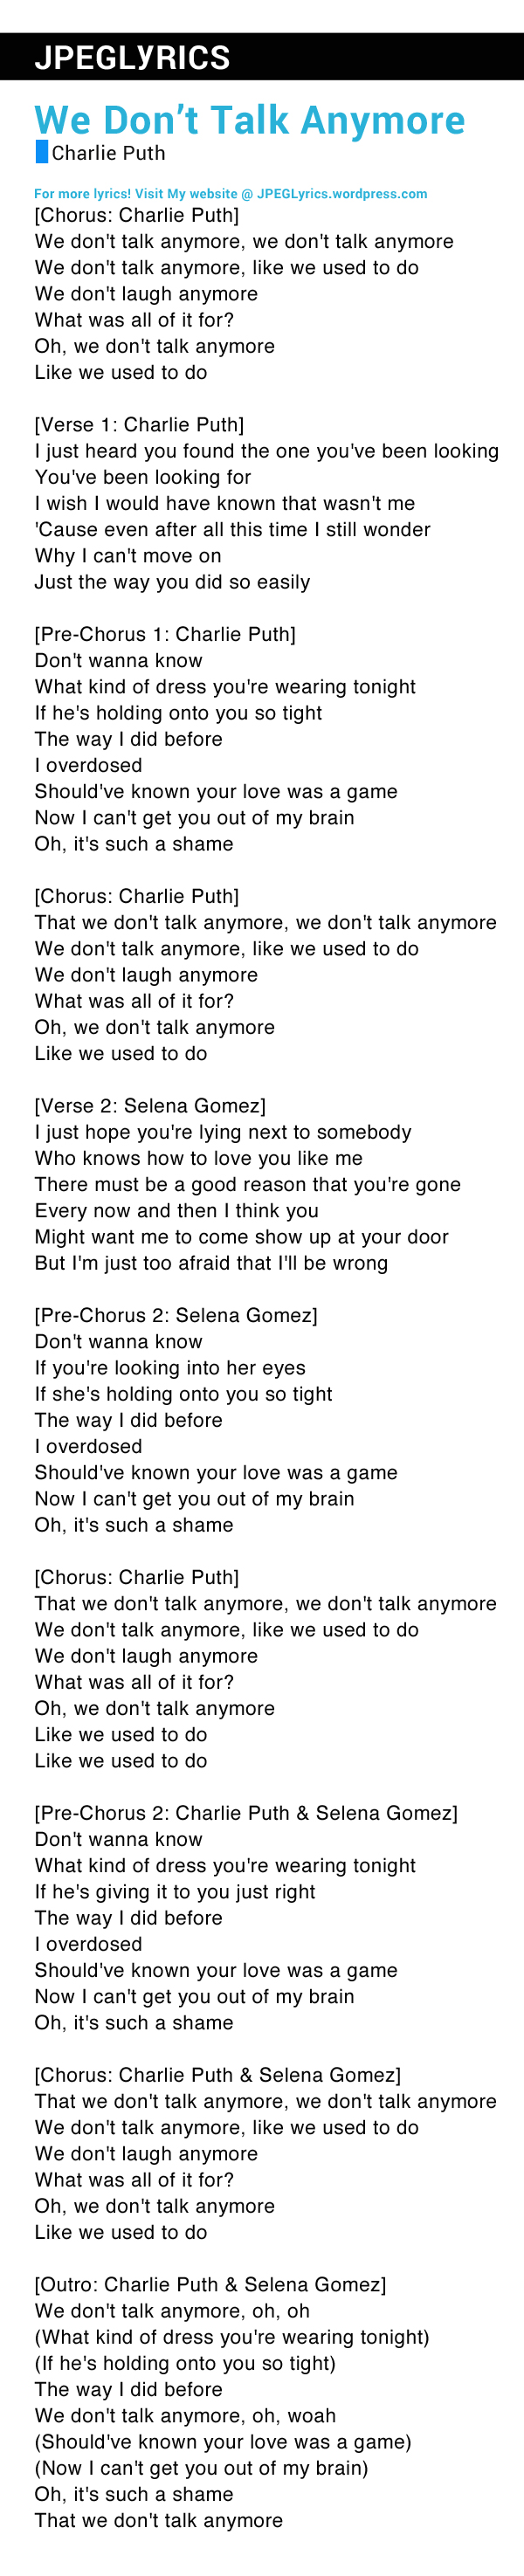 We Don T Talk Anymore By Charlie Puth Lyrics Jpeg Lyrics